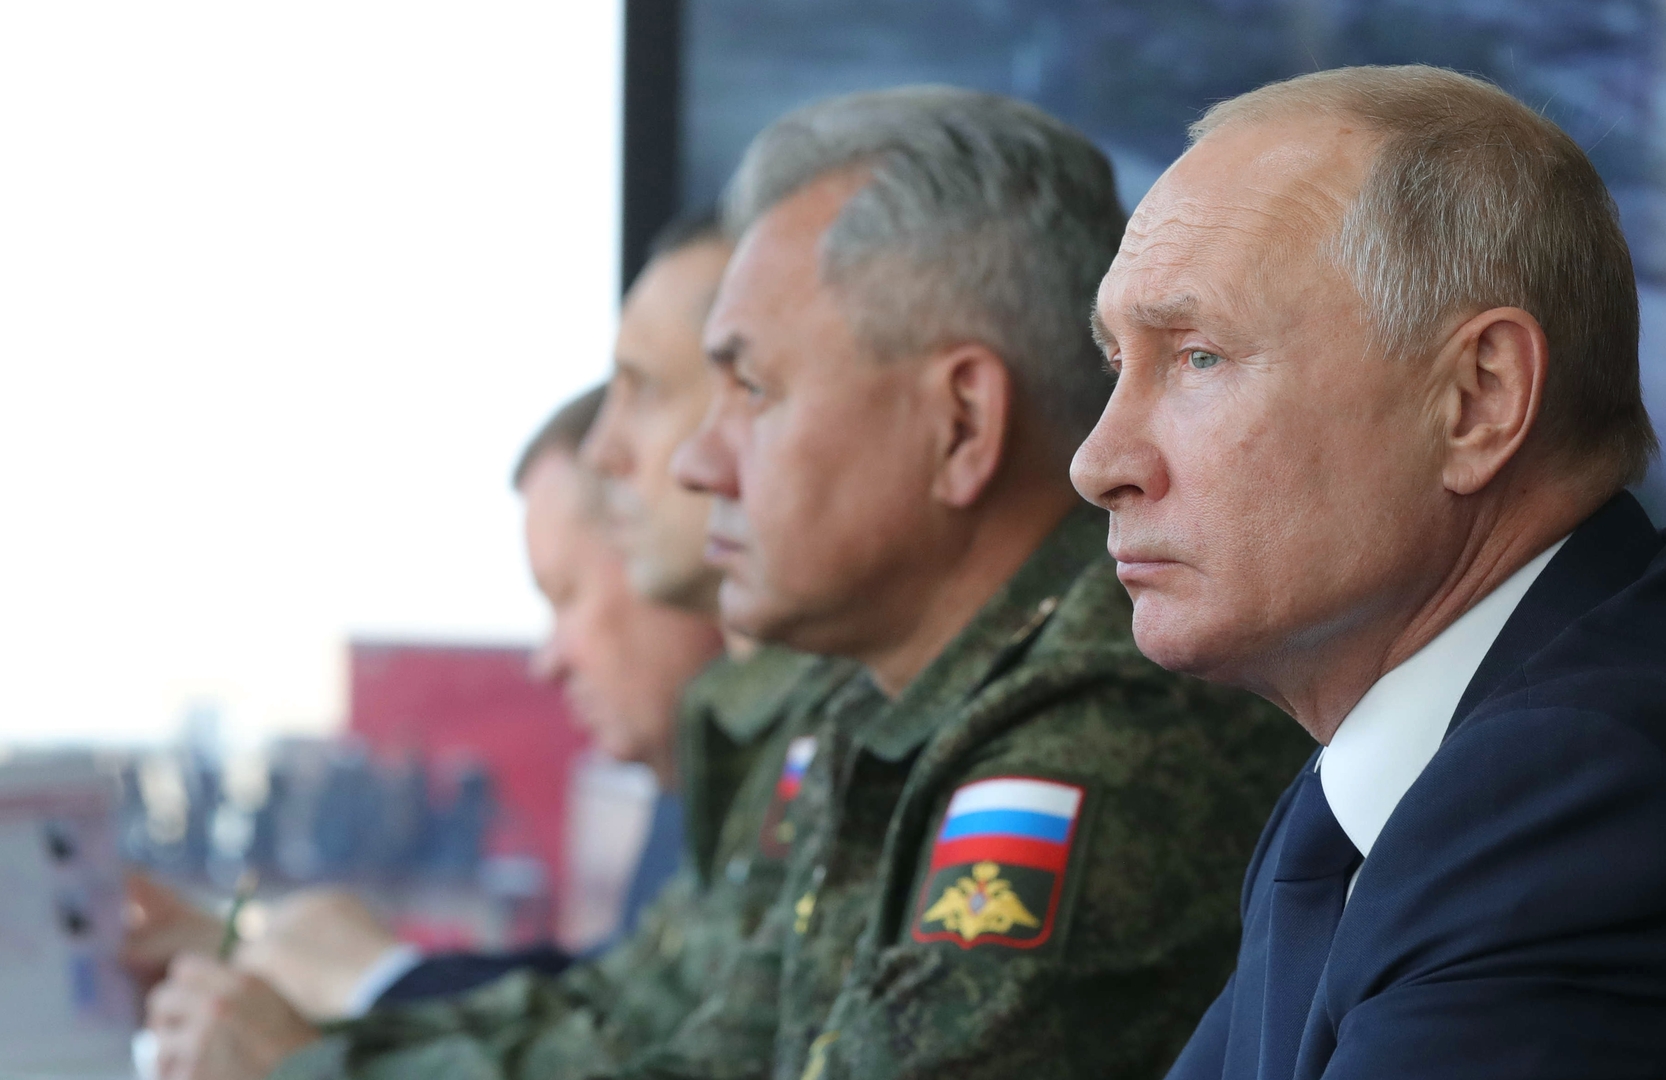 بقيادة بوتين.. قوات الردع الاستراتيجي الروسية تنفذ تدريبات تشمل إطلاق صواريخ باليستية ومجنحة